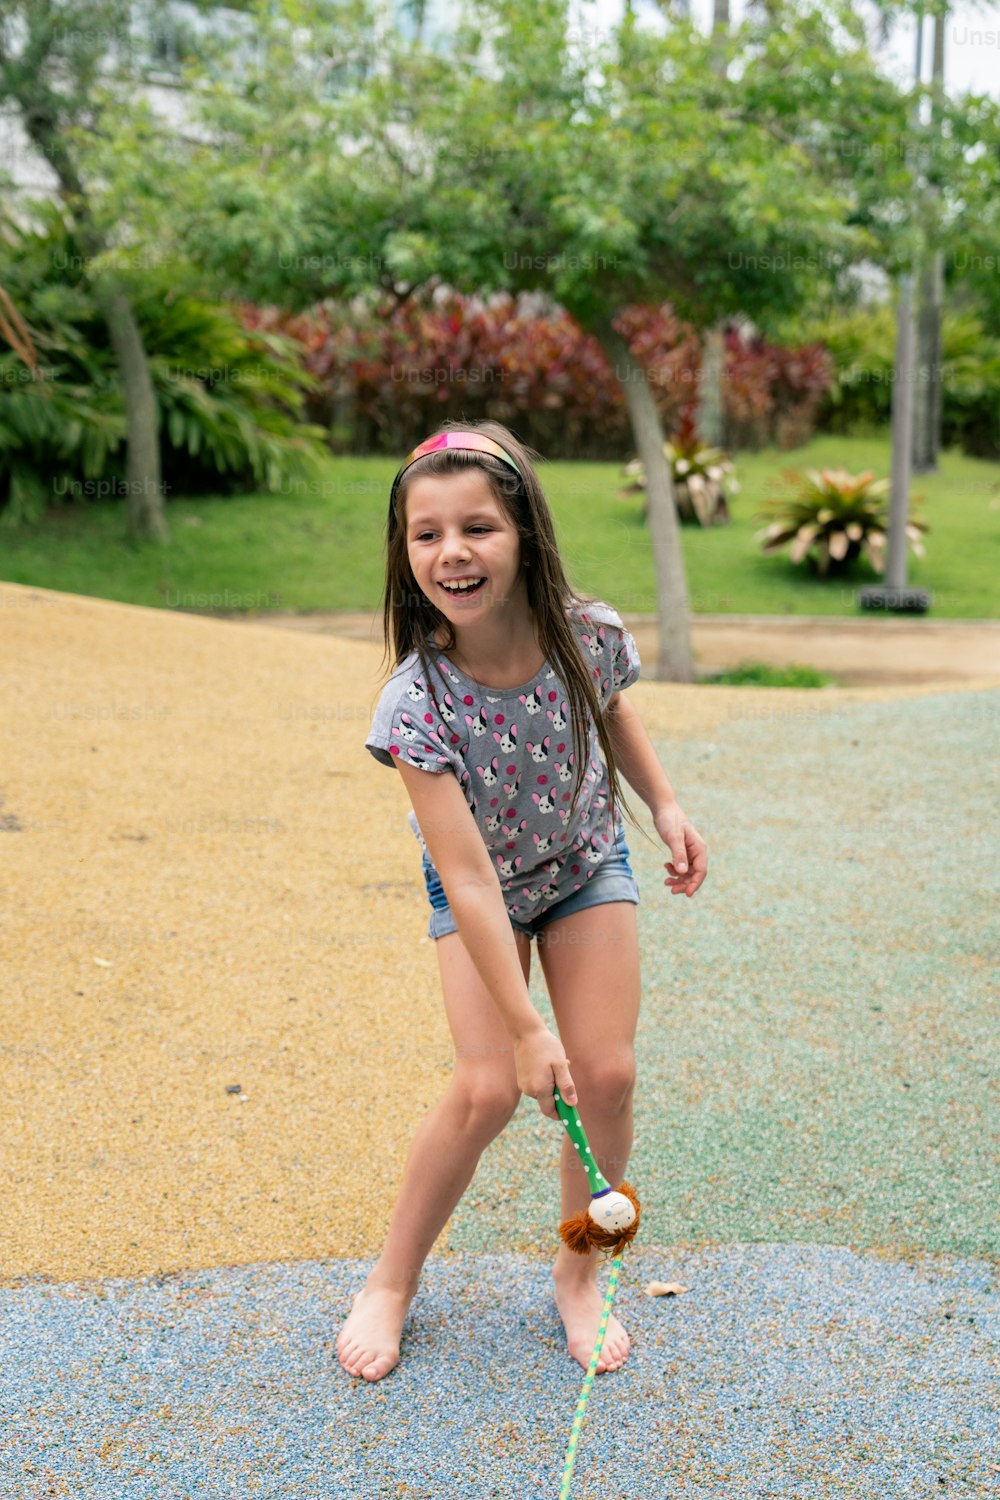 Una niña está jugando con un frisbee